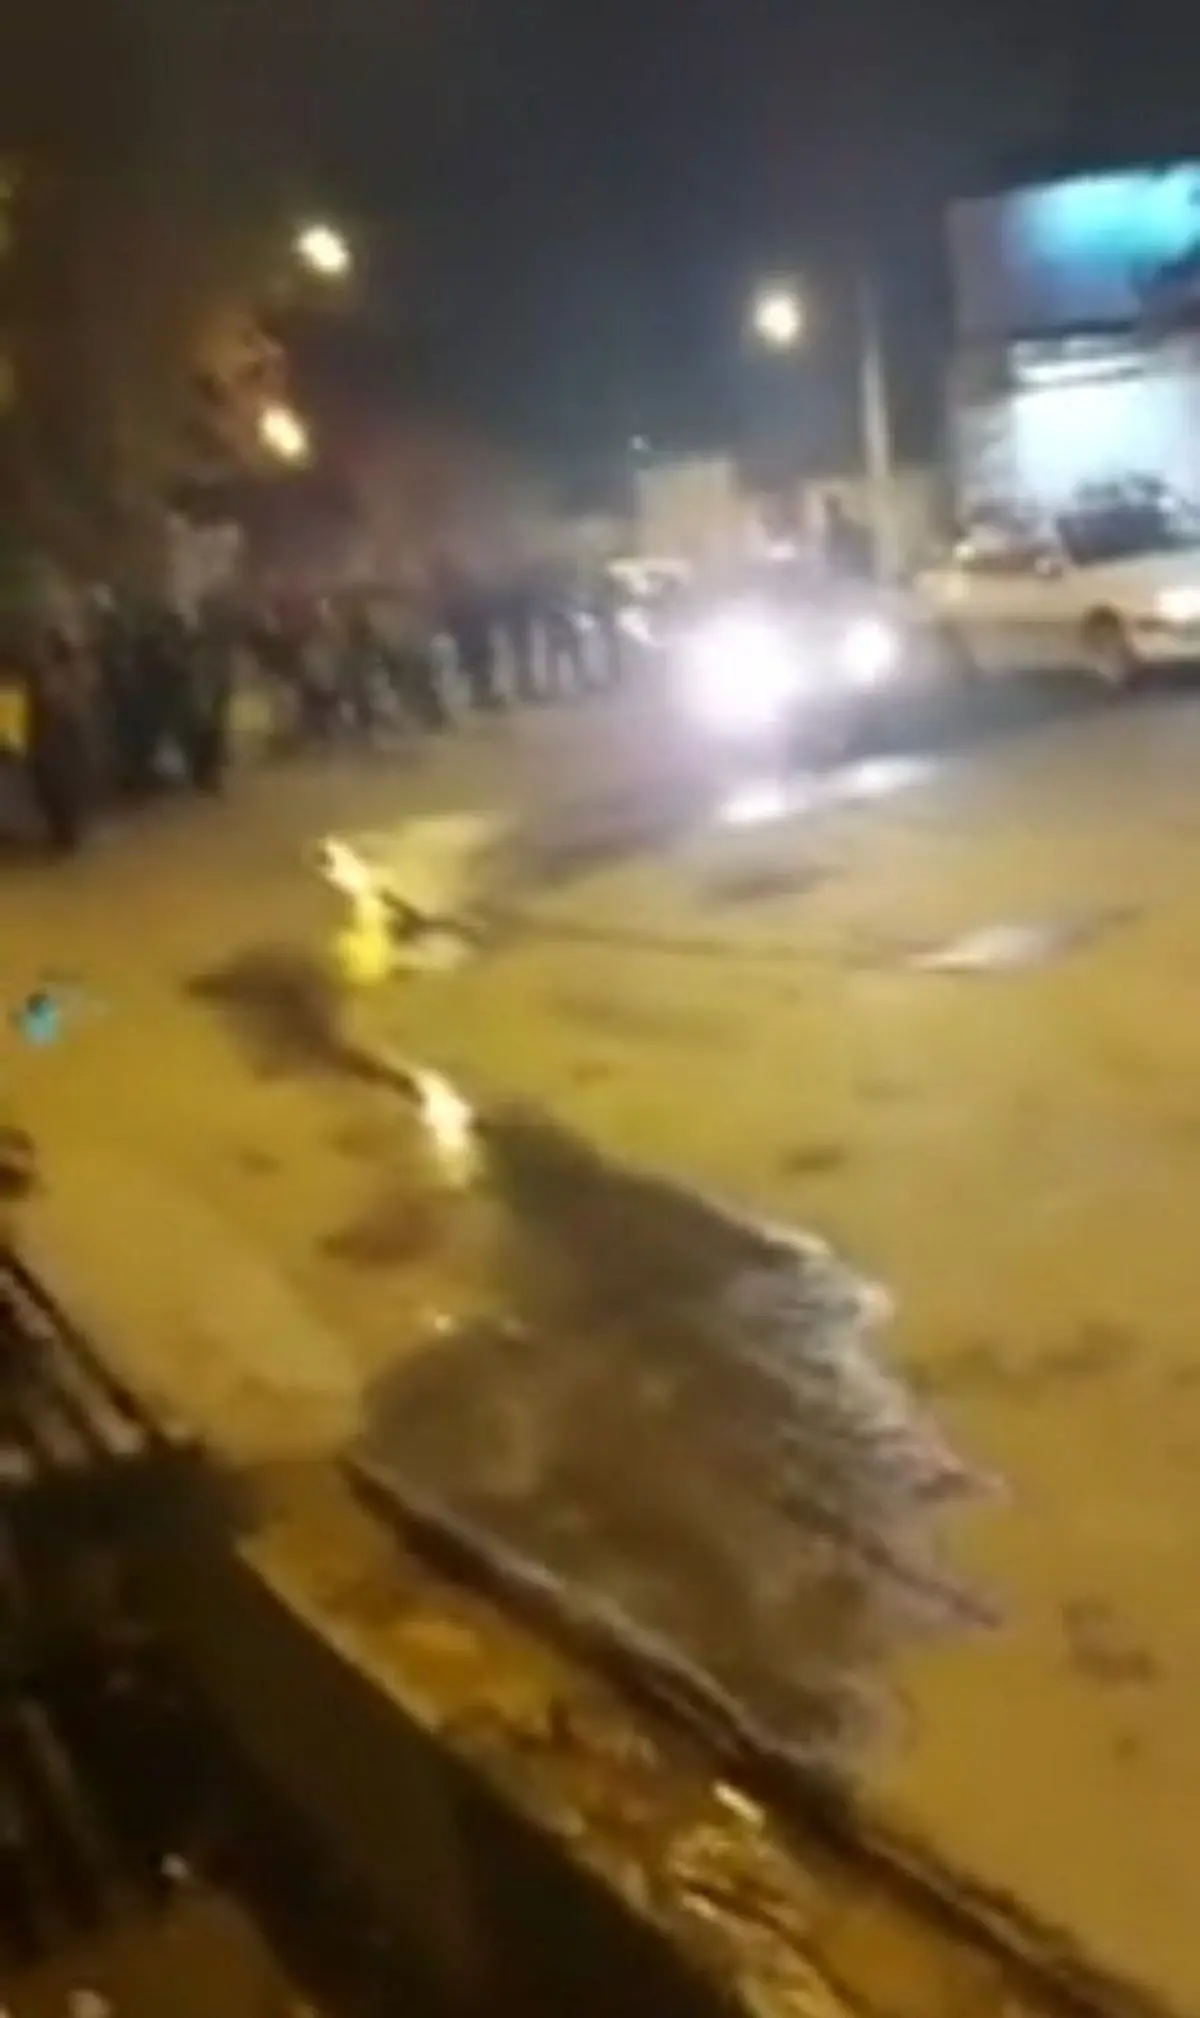 تخریب ماشین یک رهگذر در کاشمر در شب چهارشنبه‌سوری+ویدئو